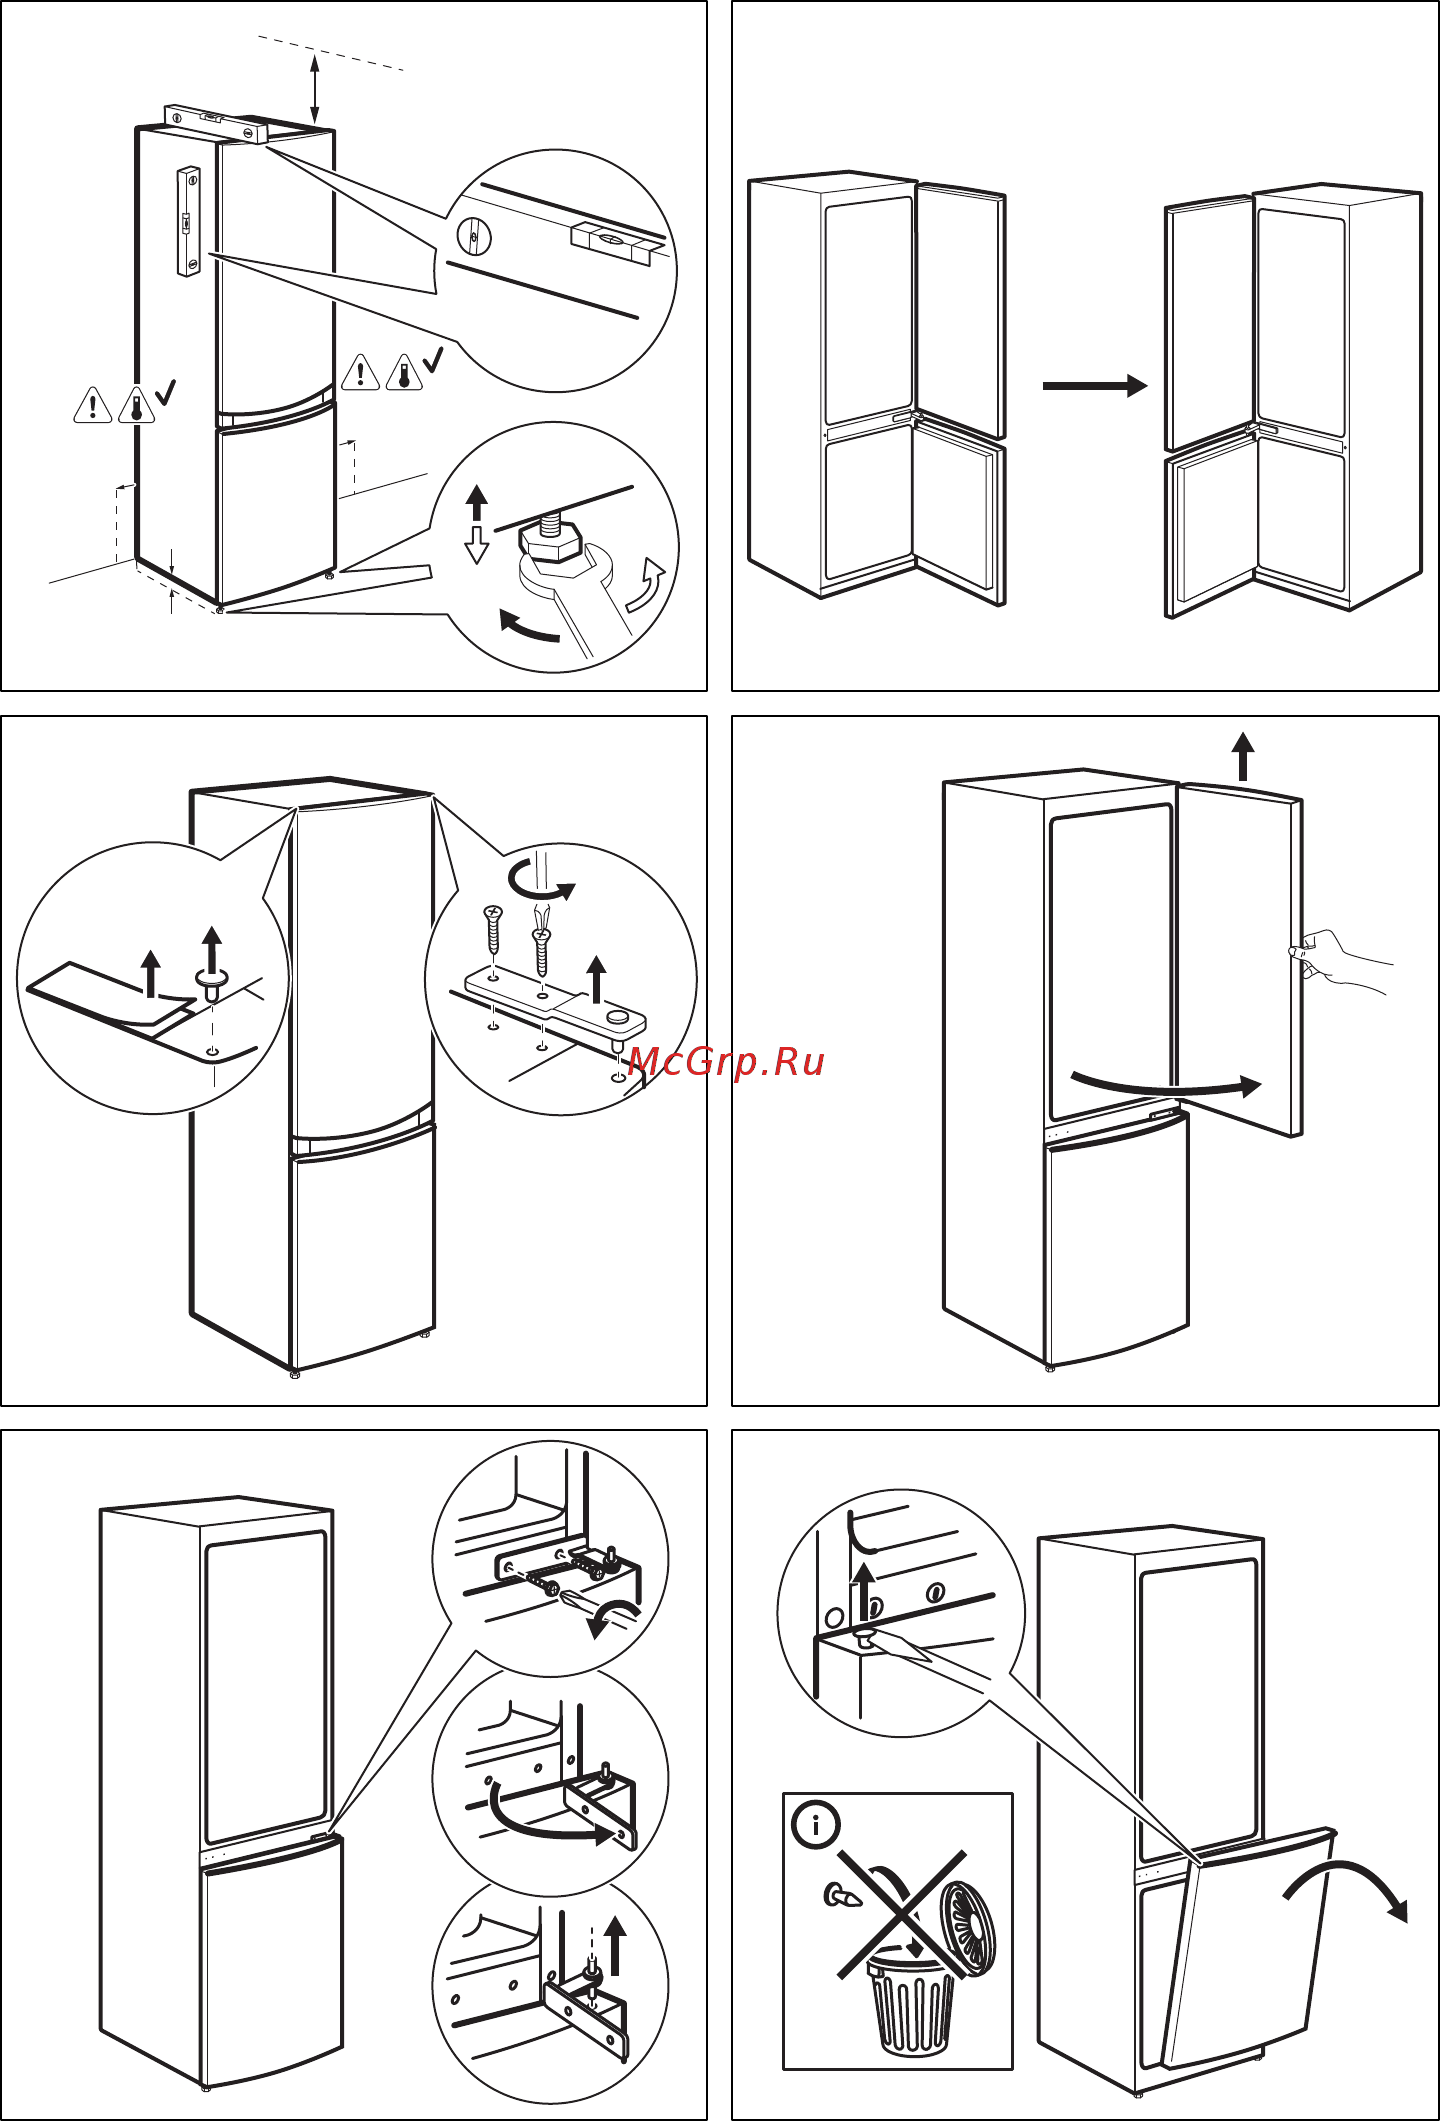 Как перевесить дверь на холодильнике на другую сторону